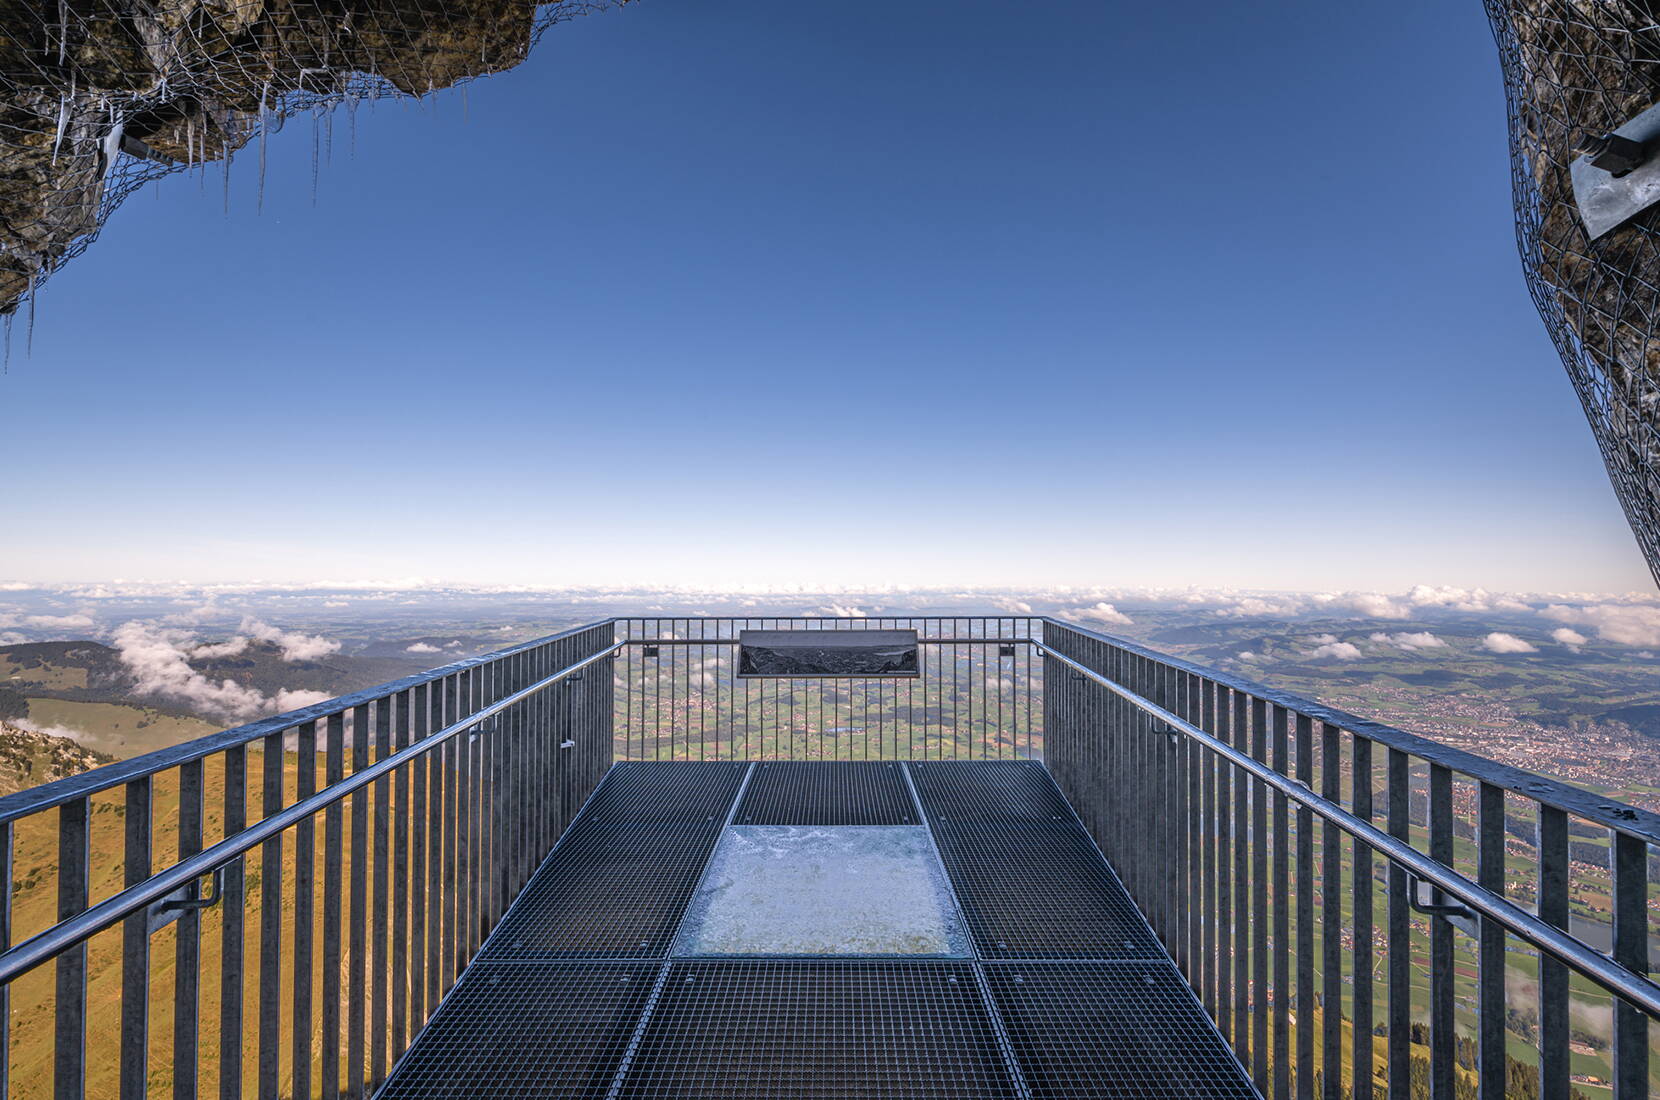 Familienausflug Stockhorn. Der Thuner Hausberg «Stögu» ist durch eine Luftseilbahn erschlossen. Am Stockhorn warten rund 70 km markierte Wanderwege in allen Schwierigkeitsgraden darauf, entdeckt zu werden.